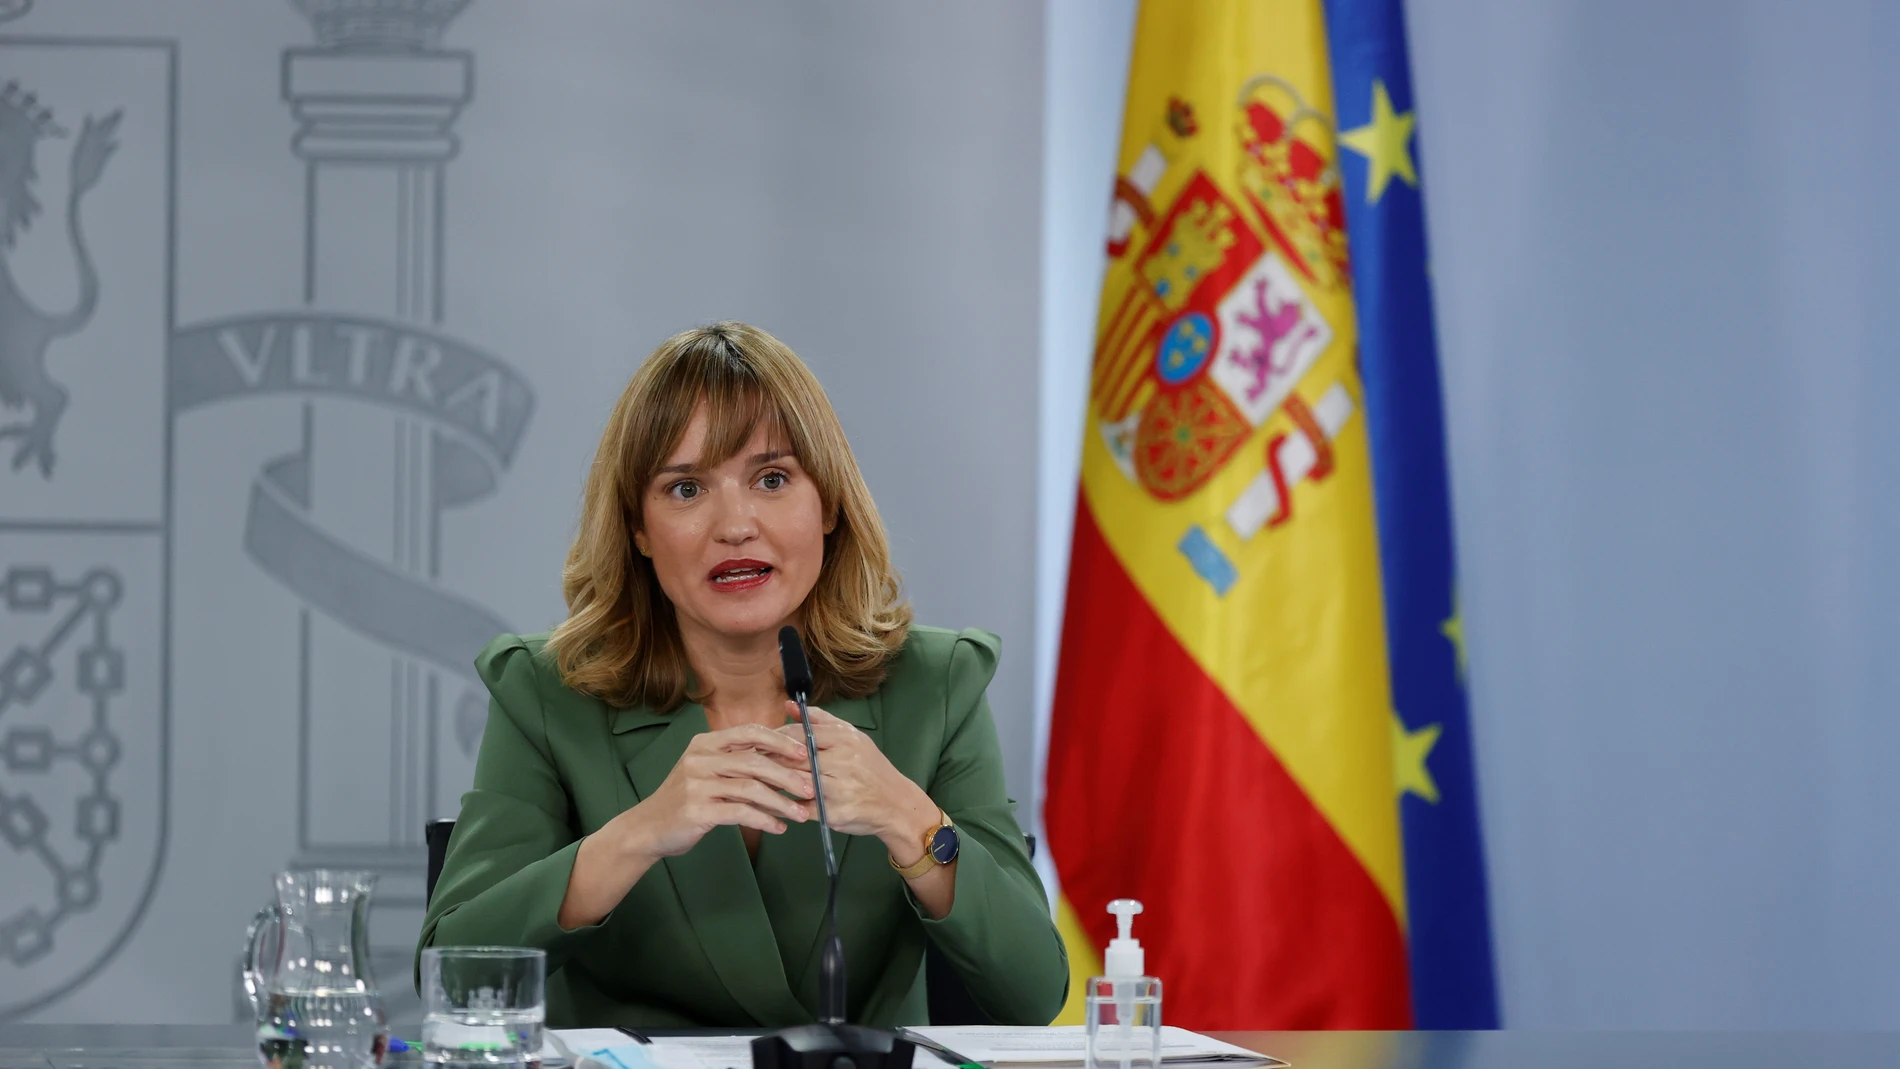 La ministra de Educación, Pilar Alegría durante la rueda de prensa tras el Consejo de Ministros